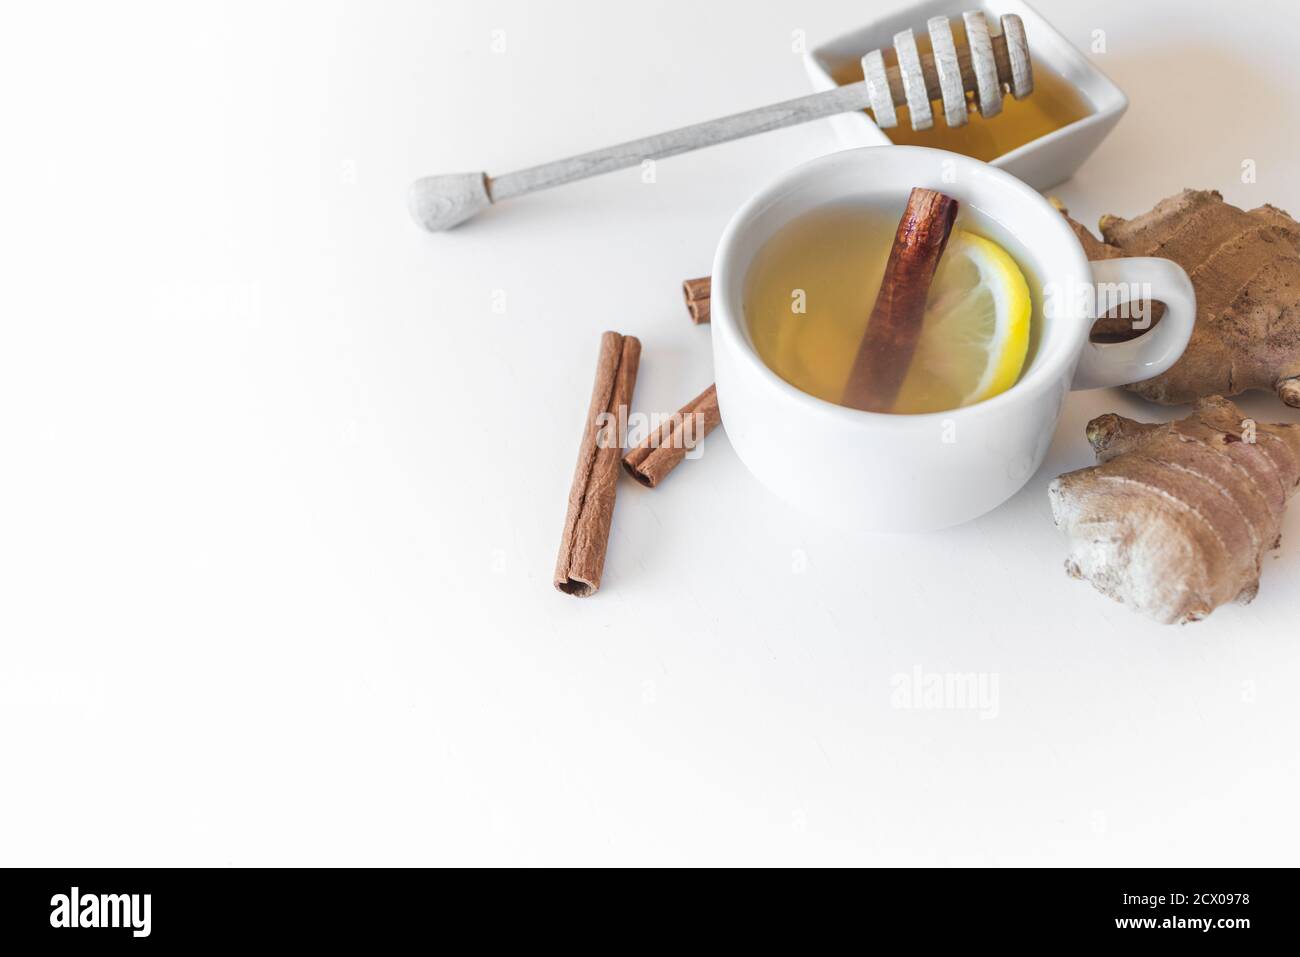 une tasse de perfusion et des ingrédients comme le gingembre, le citron, la cannelle et le miel sur une table blanche. Concept de remède à la maison Banque D'Images